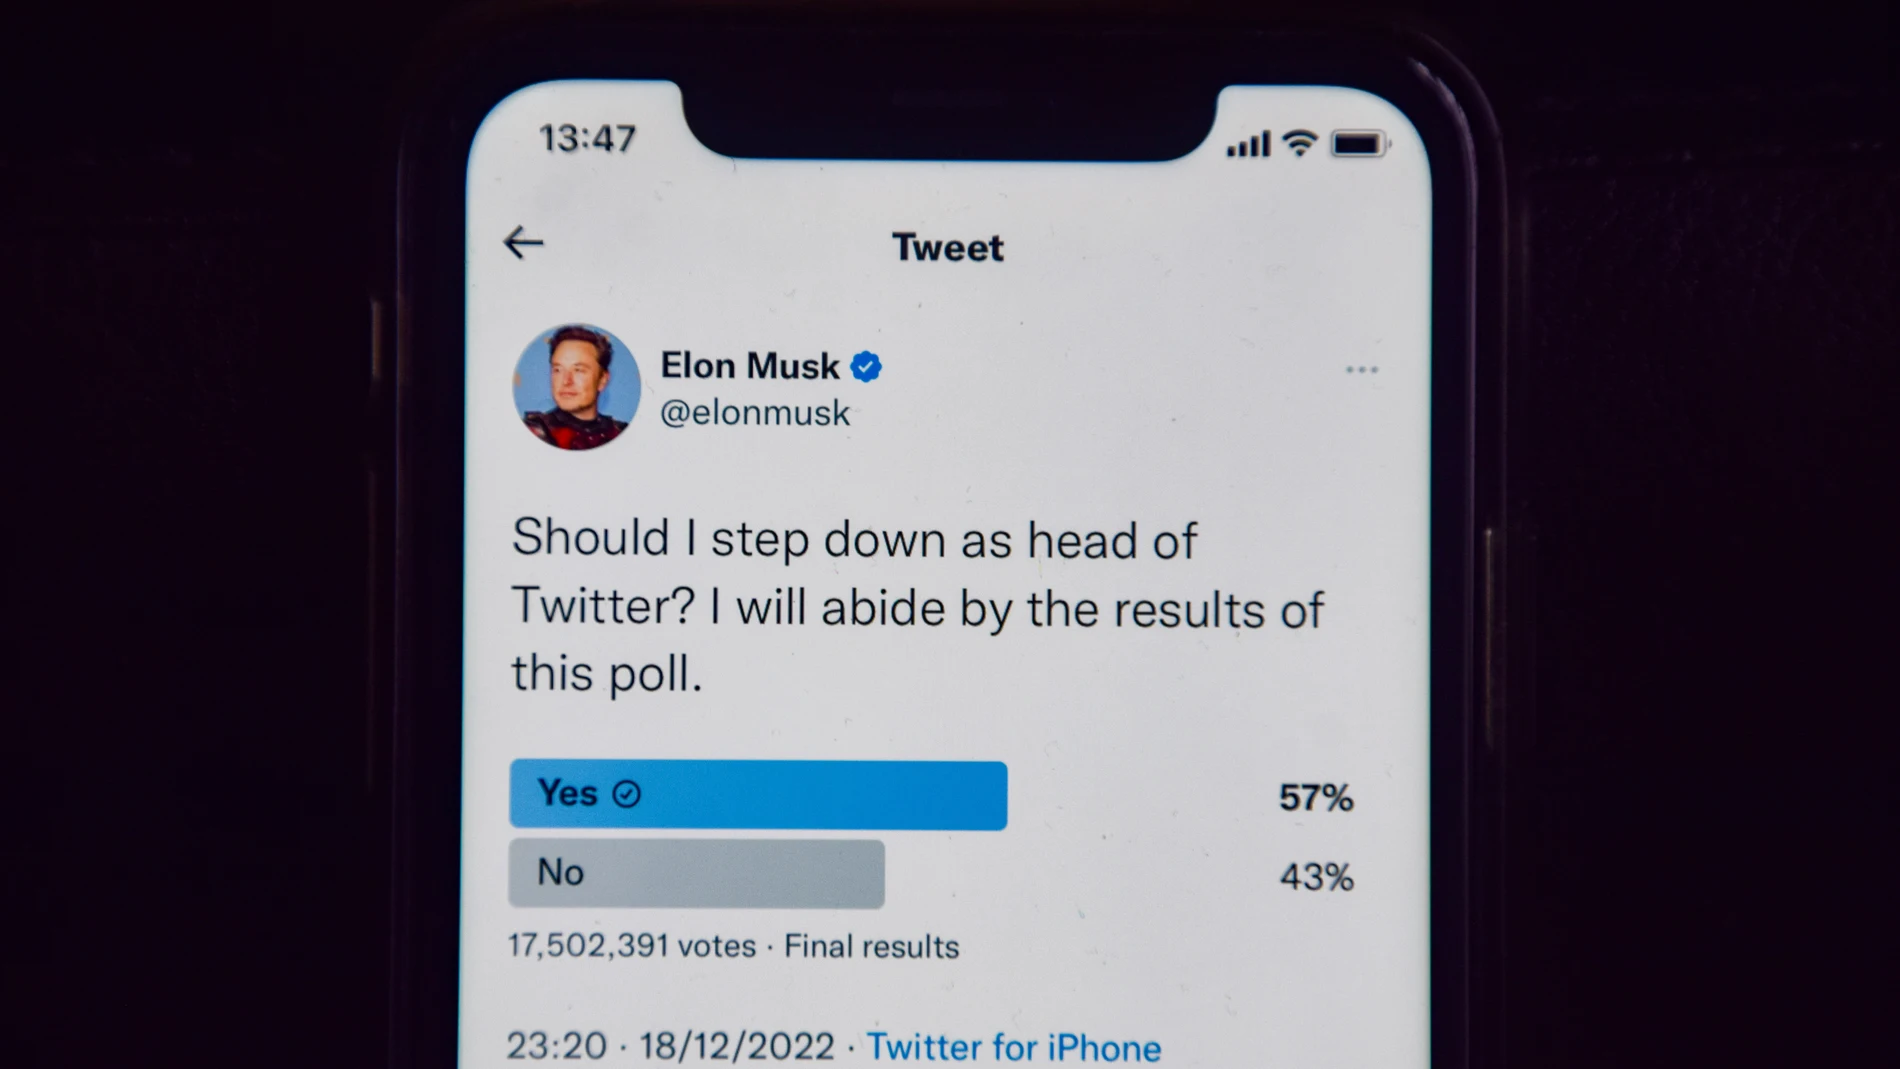 Imagen de la encuesta en la que Elon Musk preguntó si debería dejar de ser el CEO de Twitter